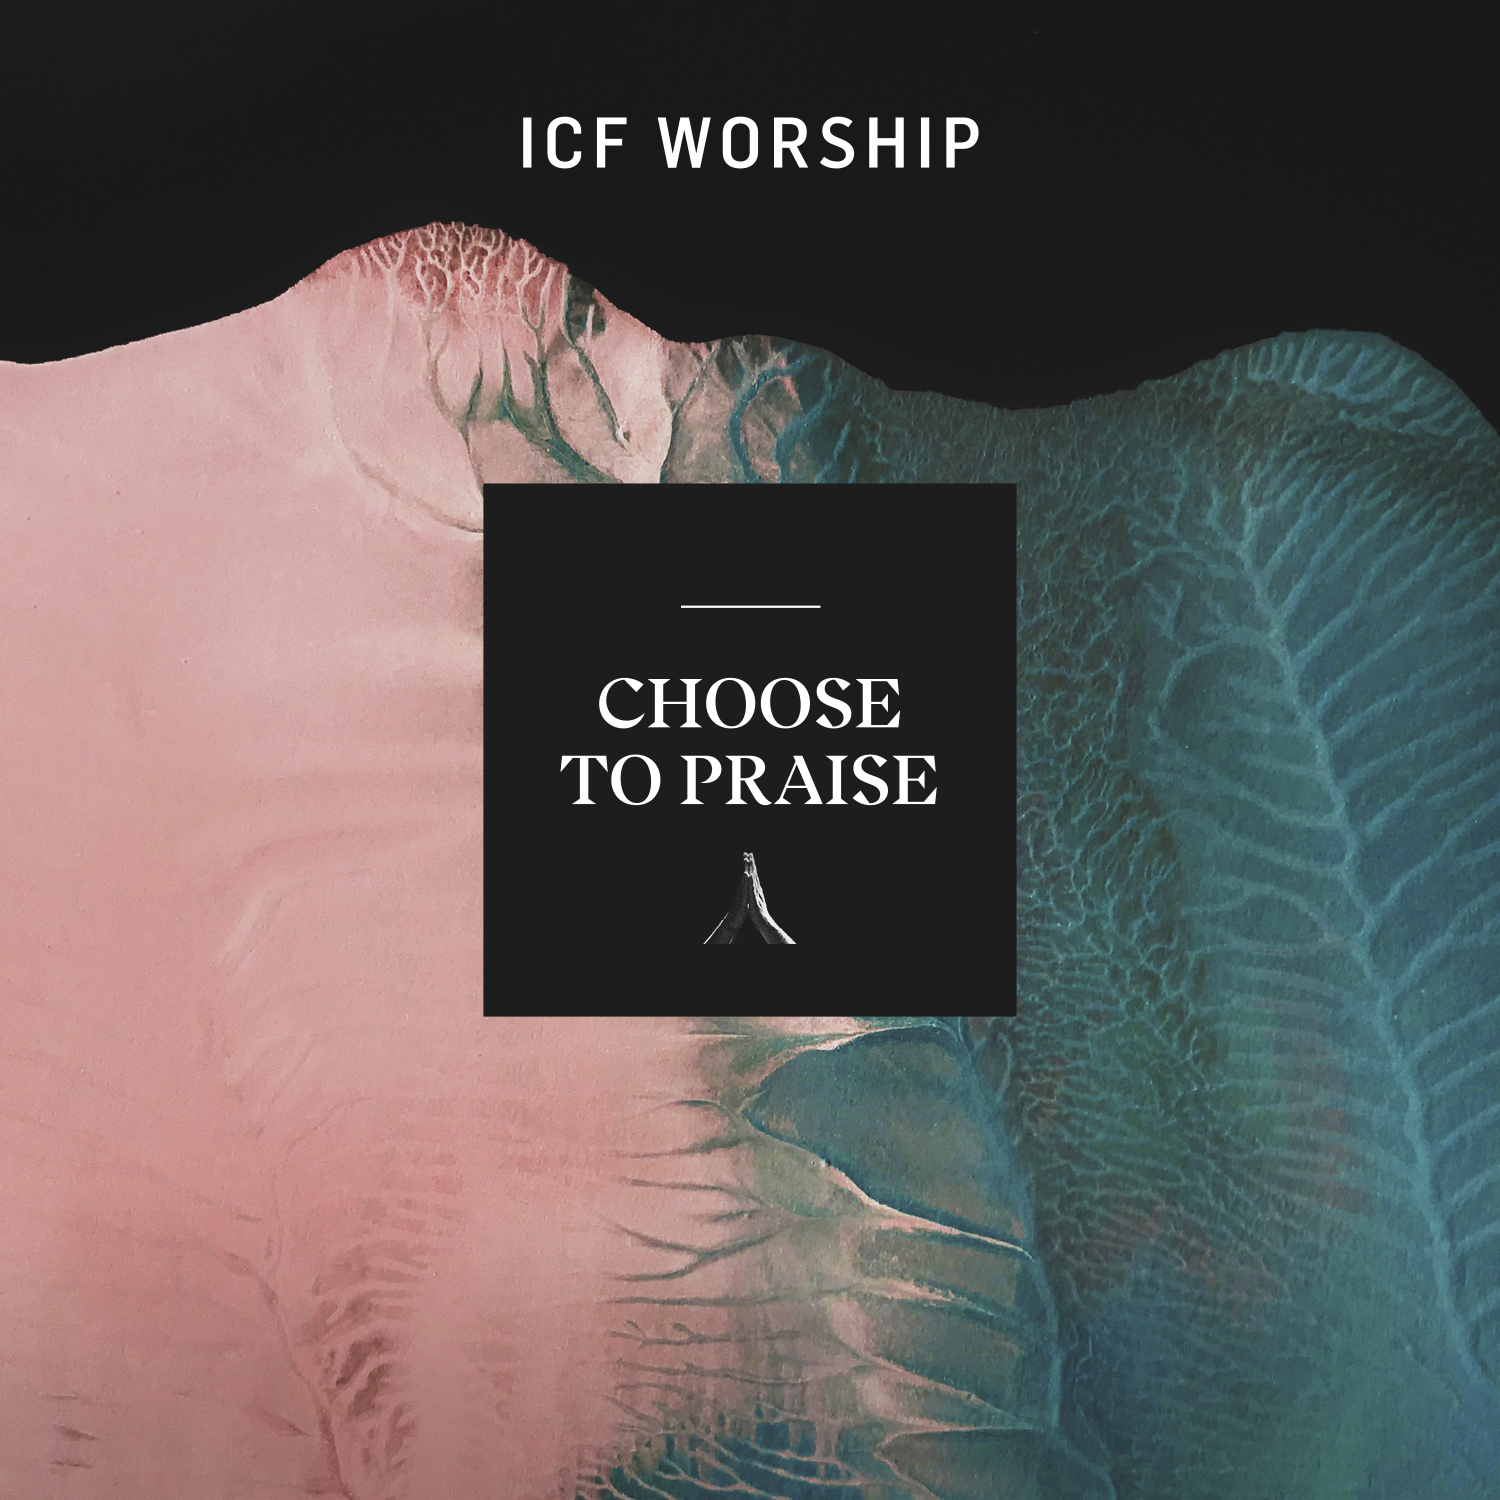 ICF Worship - Choose To Praise